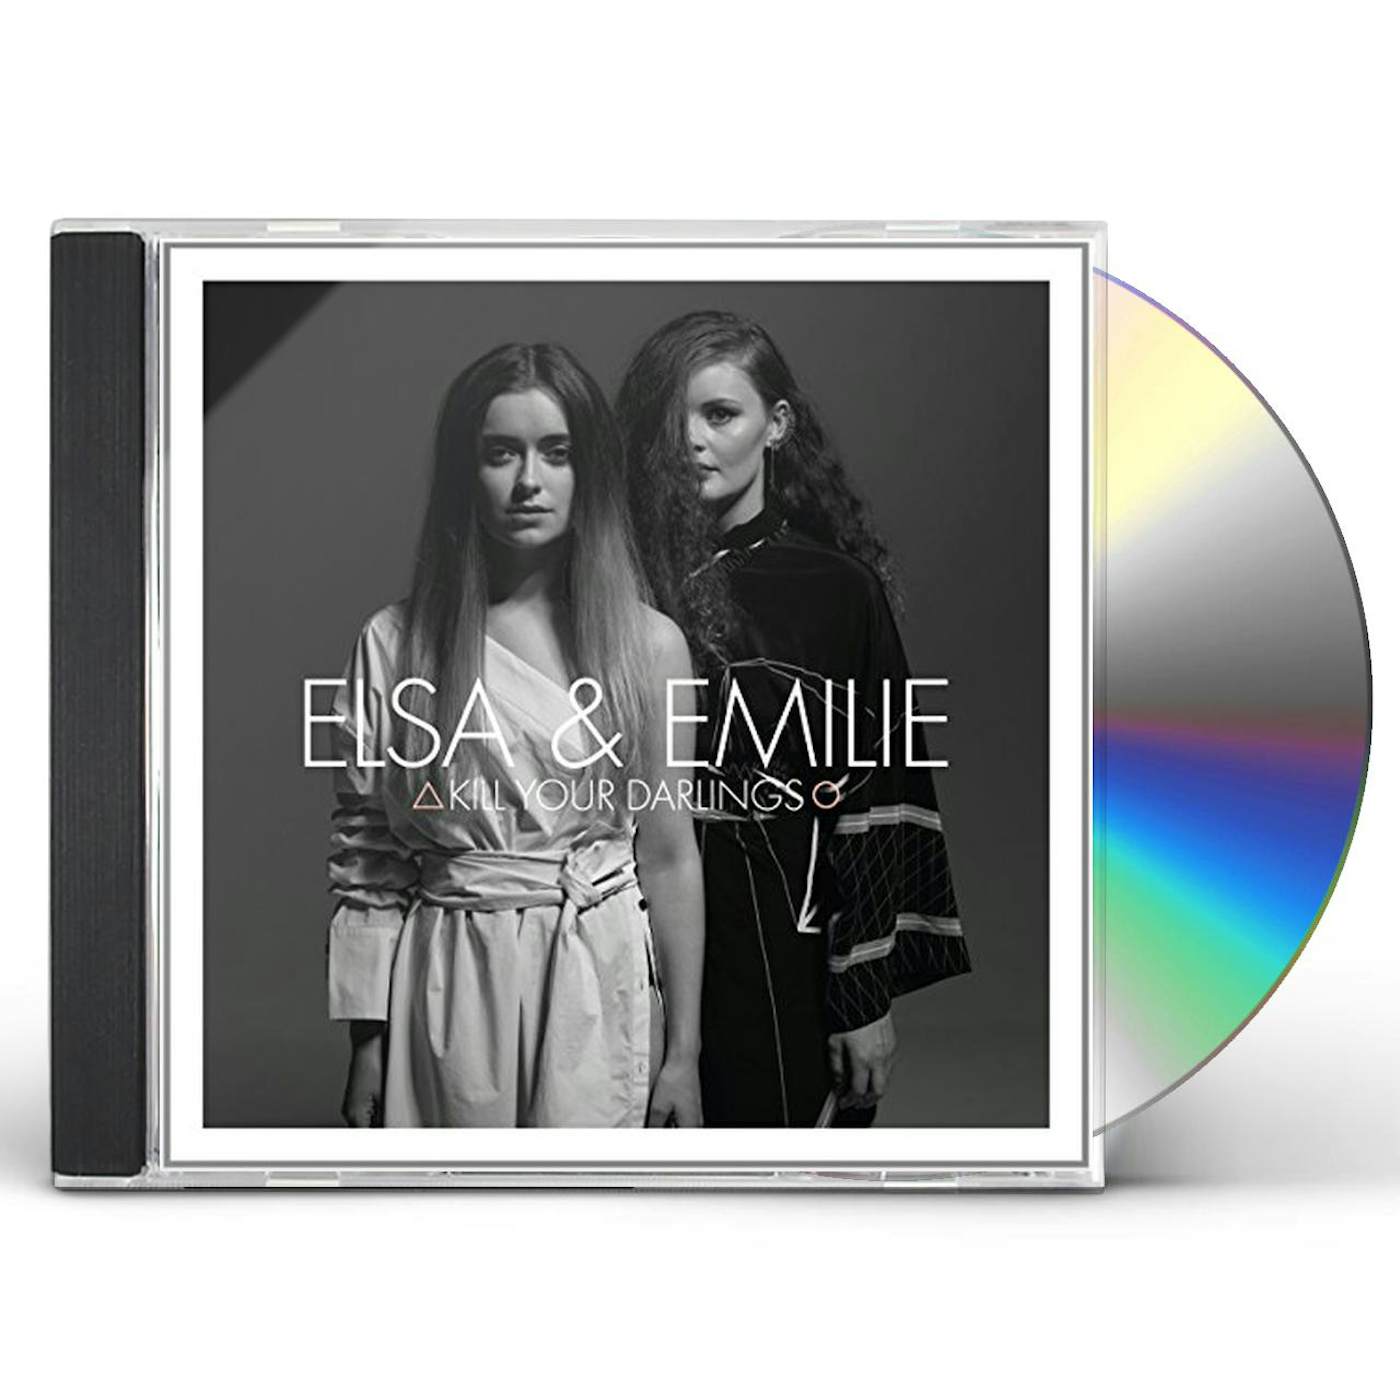 Elsa & Emilie KILL YOUR DARLINGS CD